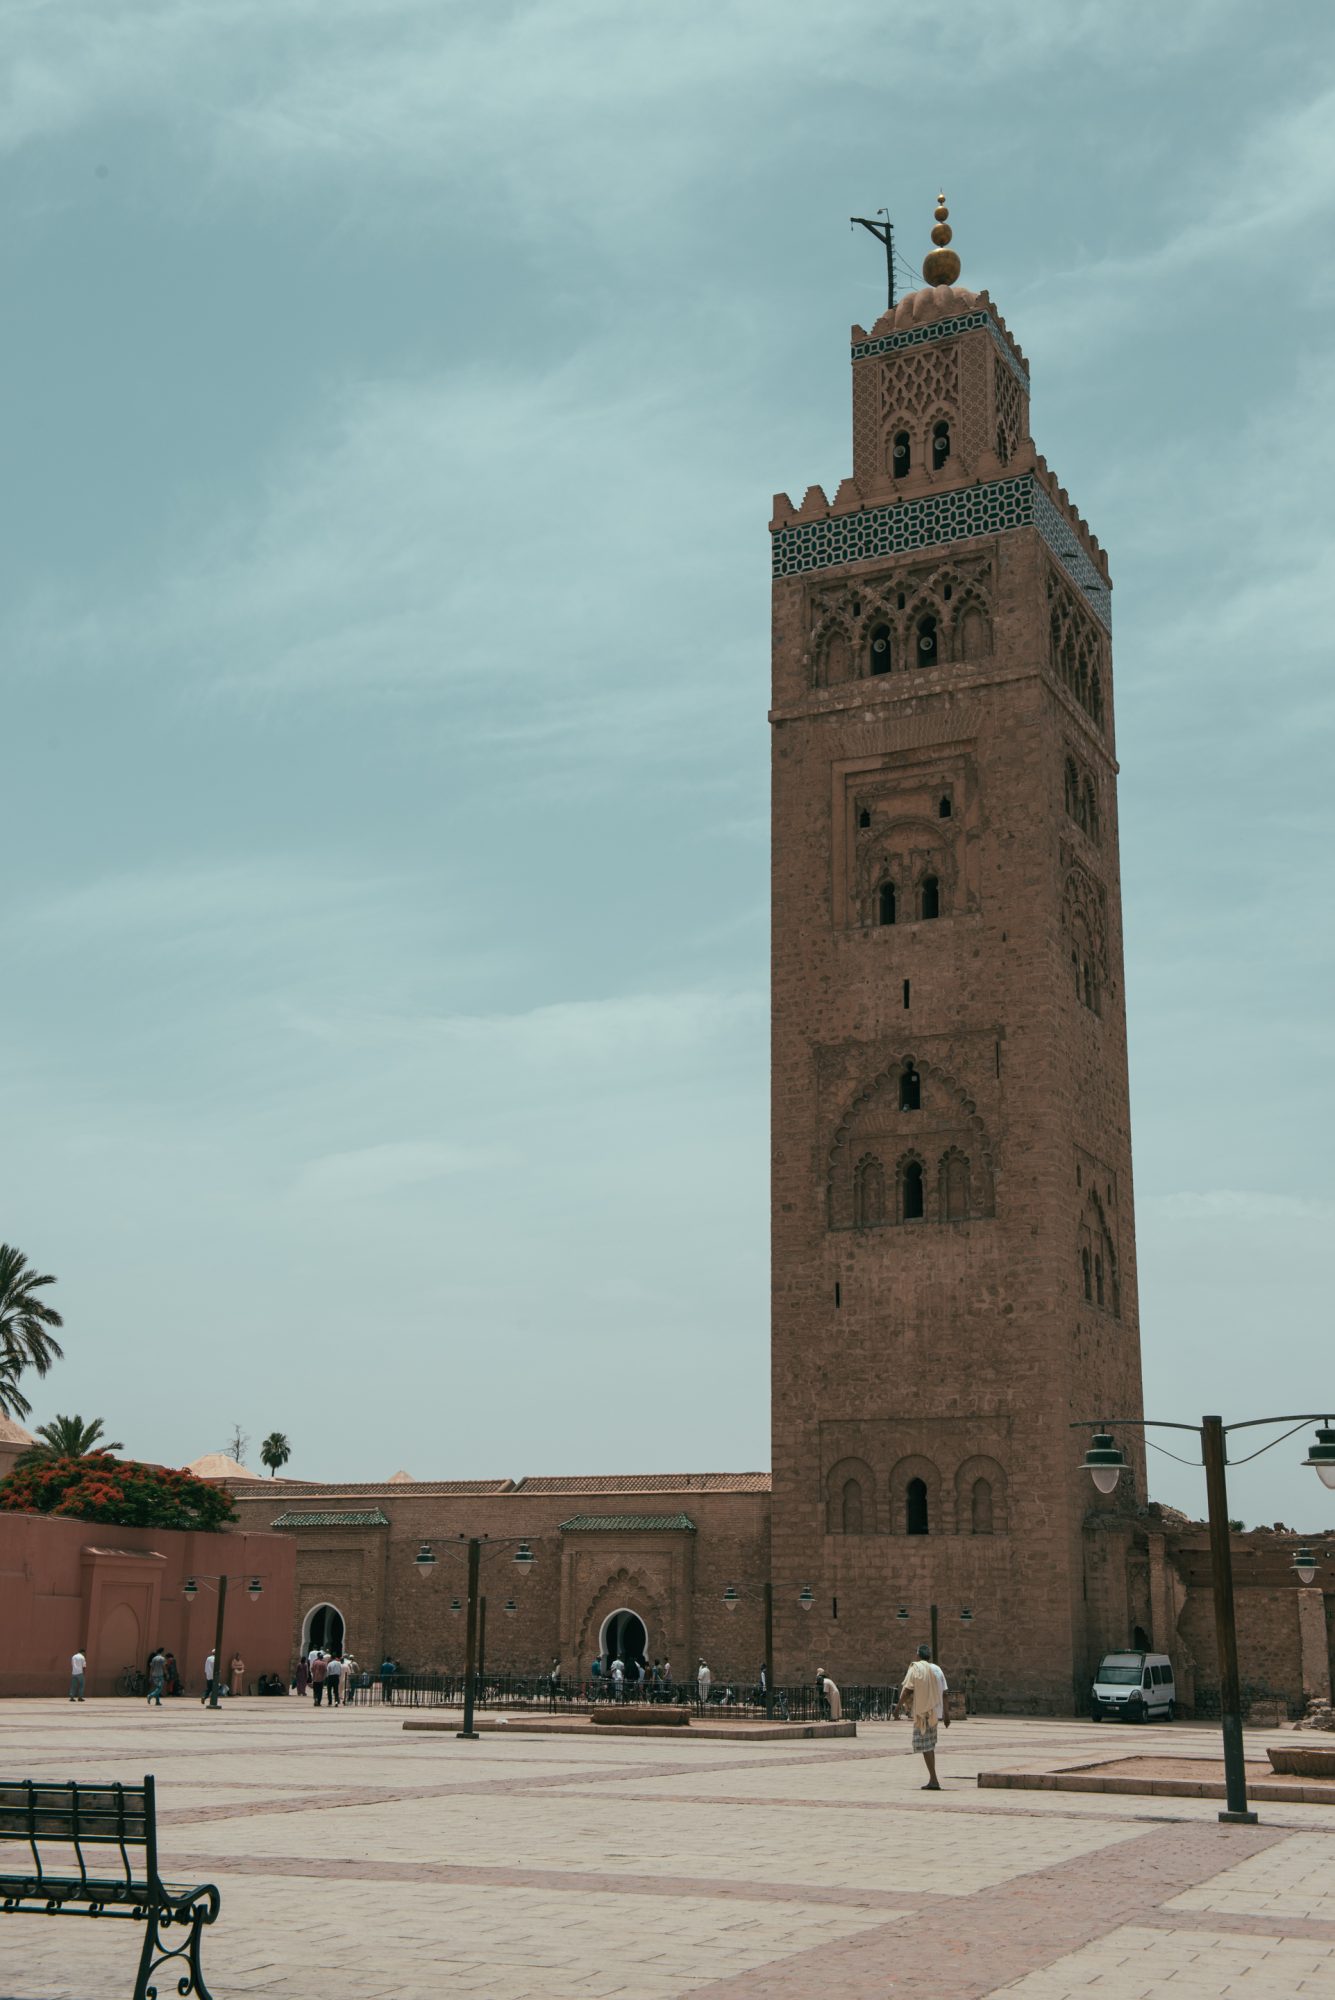 Qué saber antes de ir a Marrakech